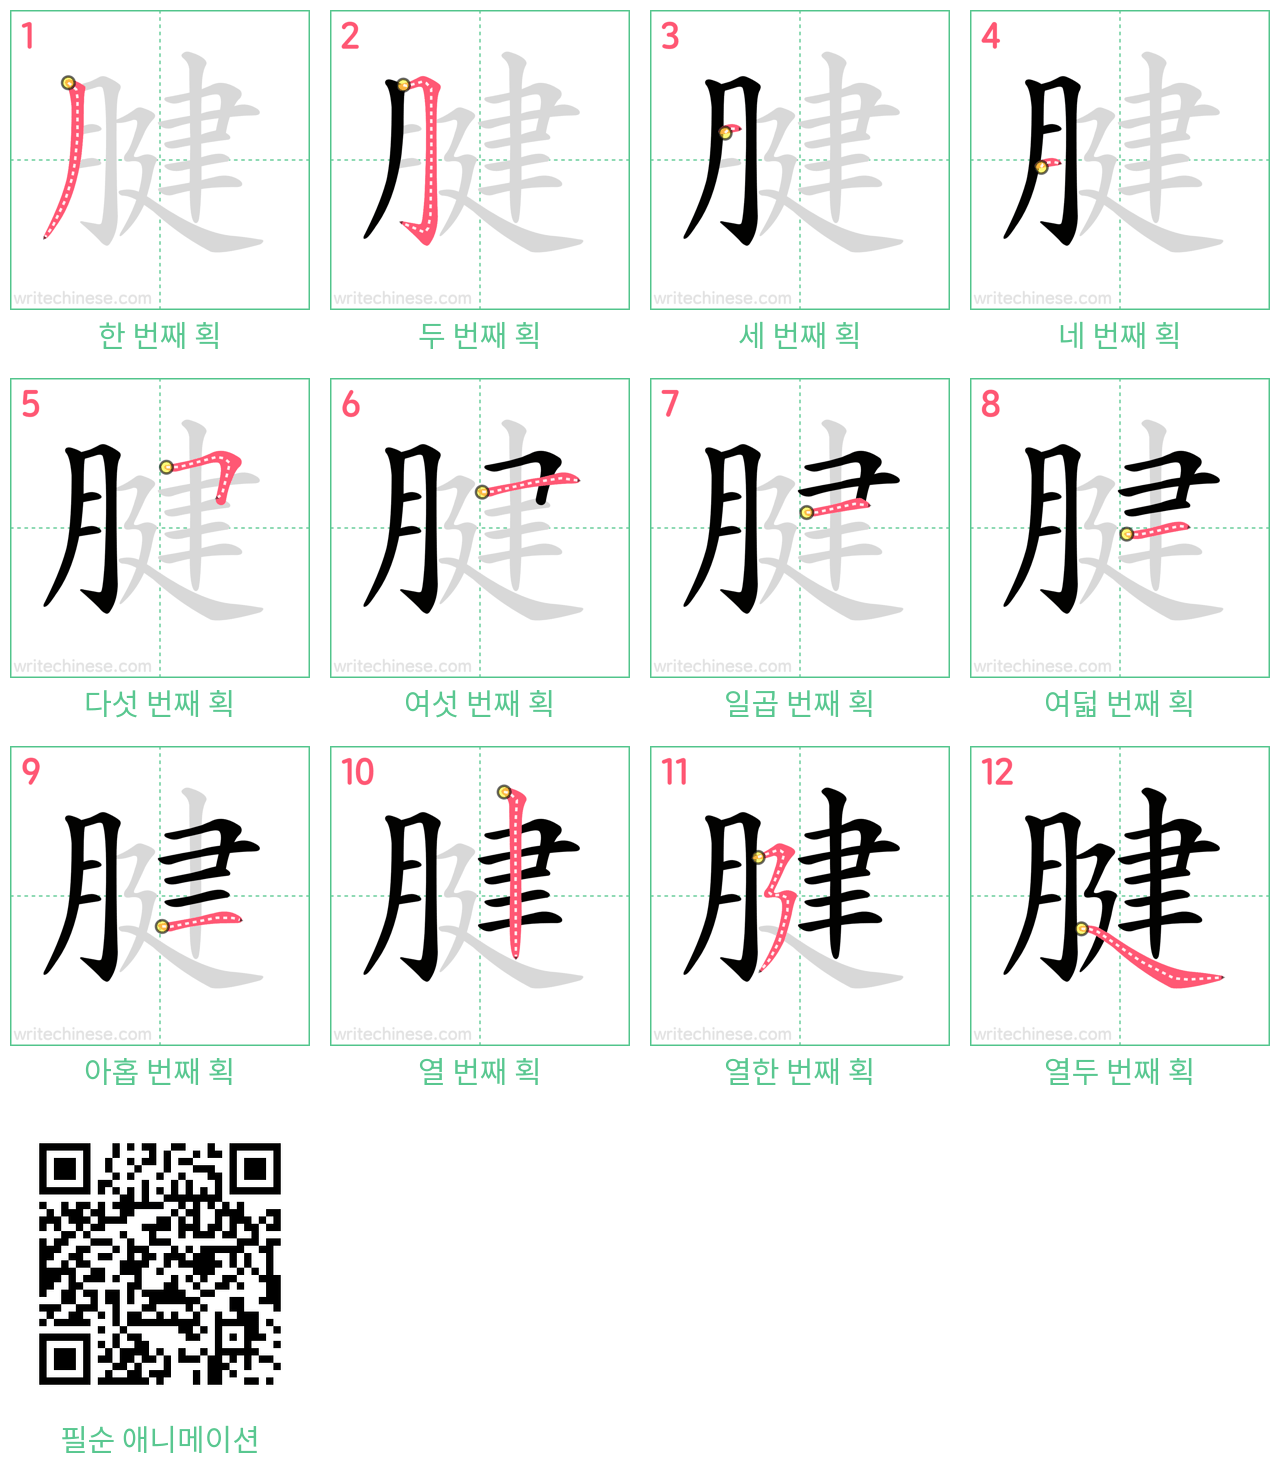 腱 step-by-step stroke order diagrams